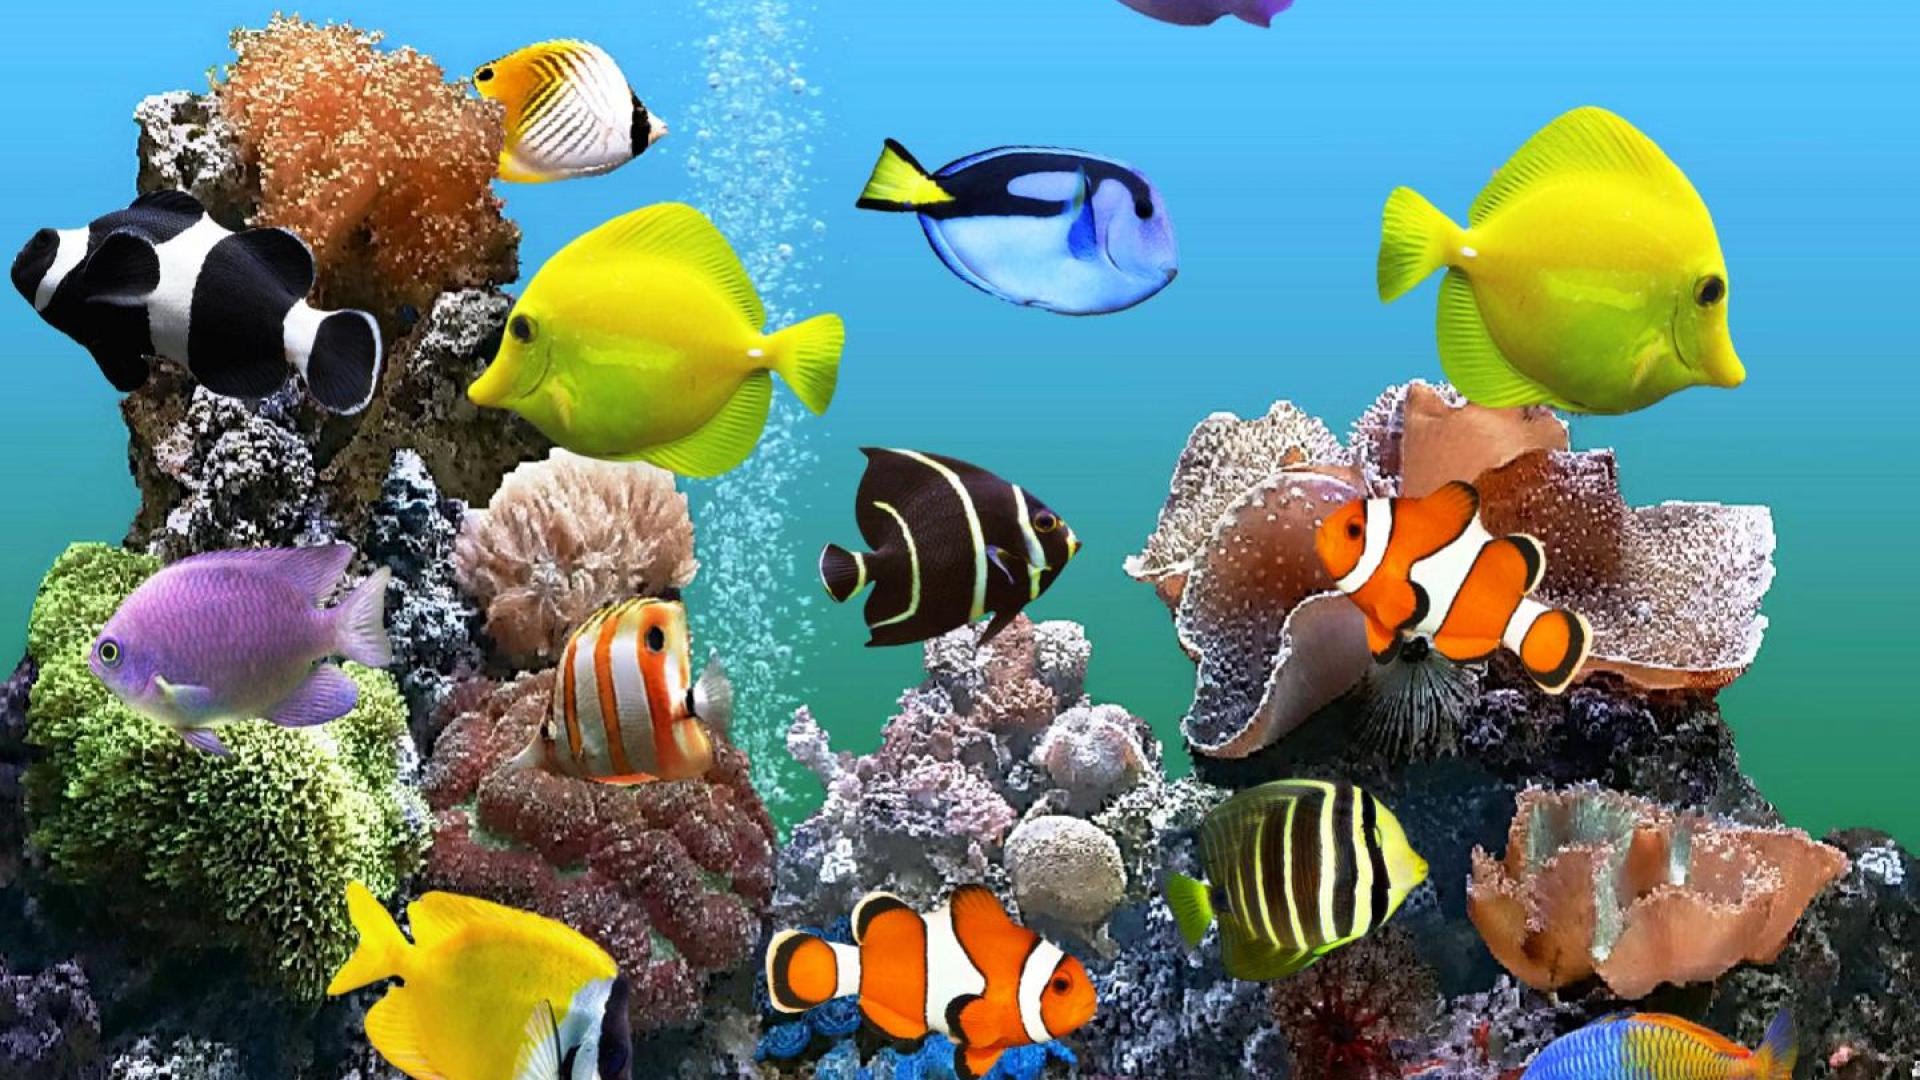 Aquarium Hd 1080p Download